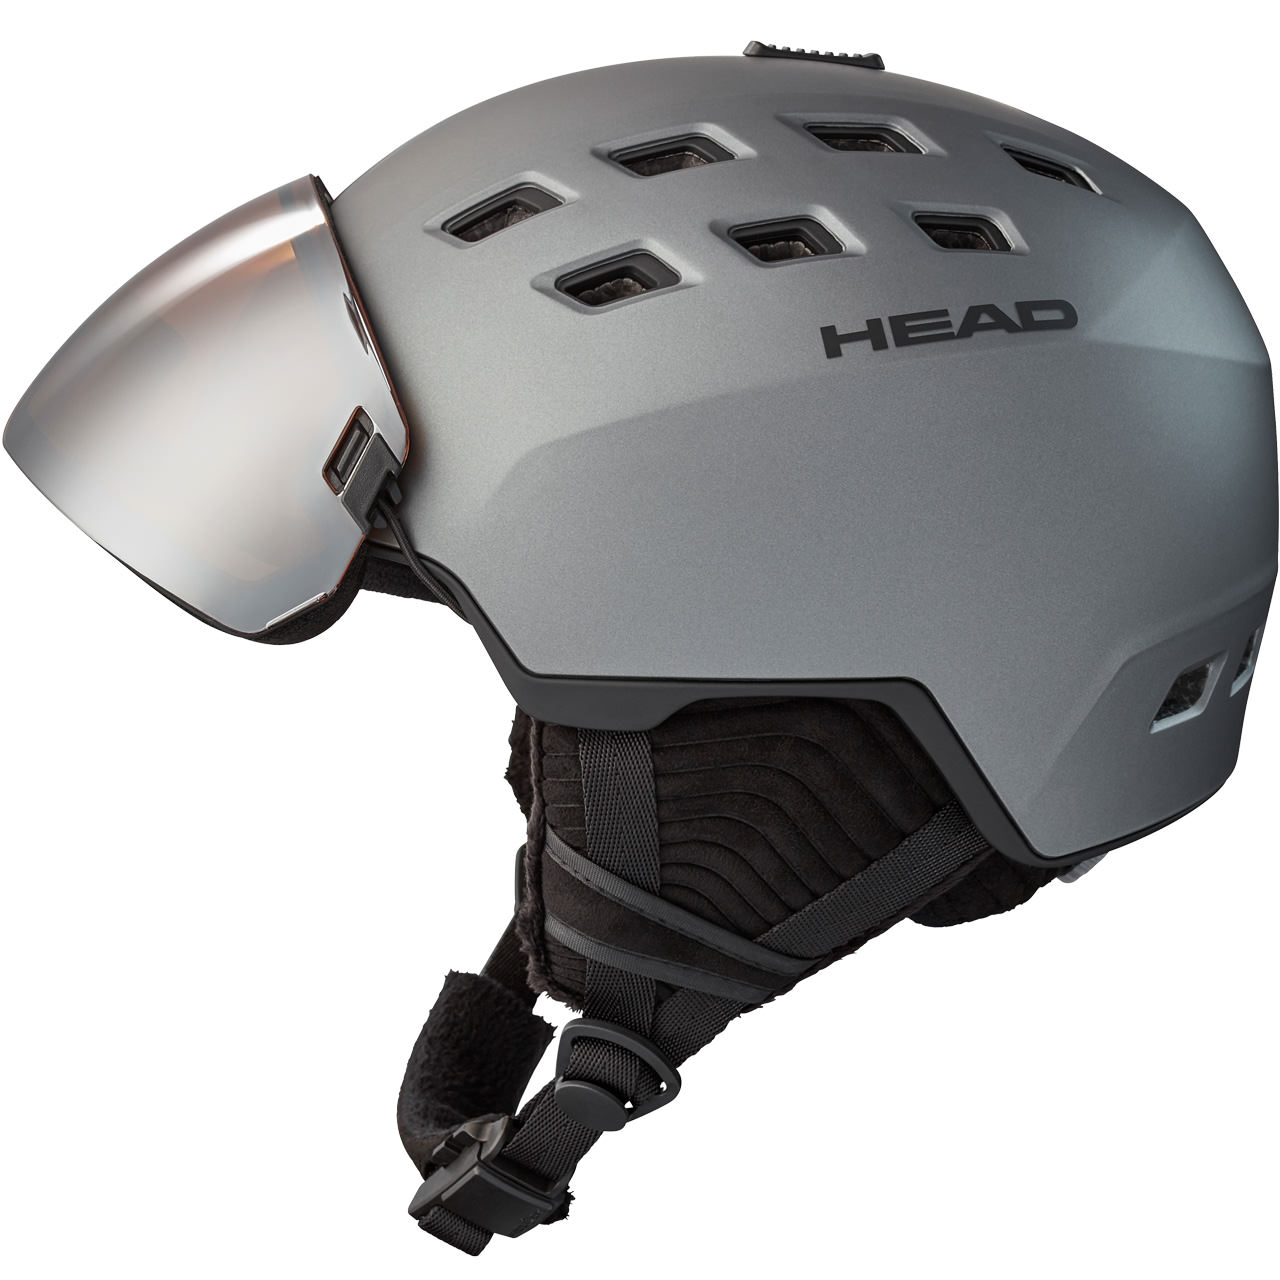 2020/21 Unisex Skihelm mit Visier Head Radar black 